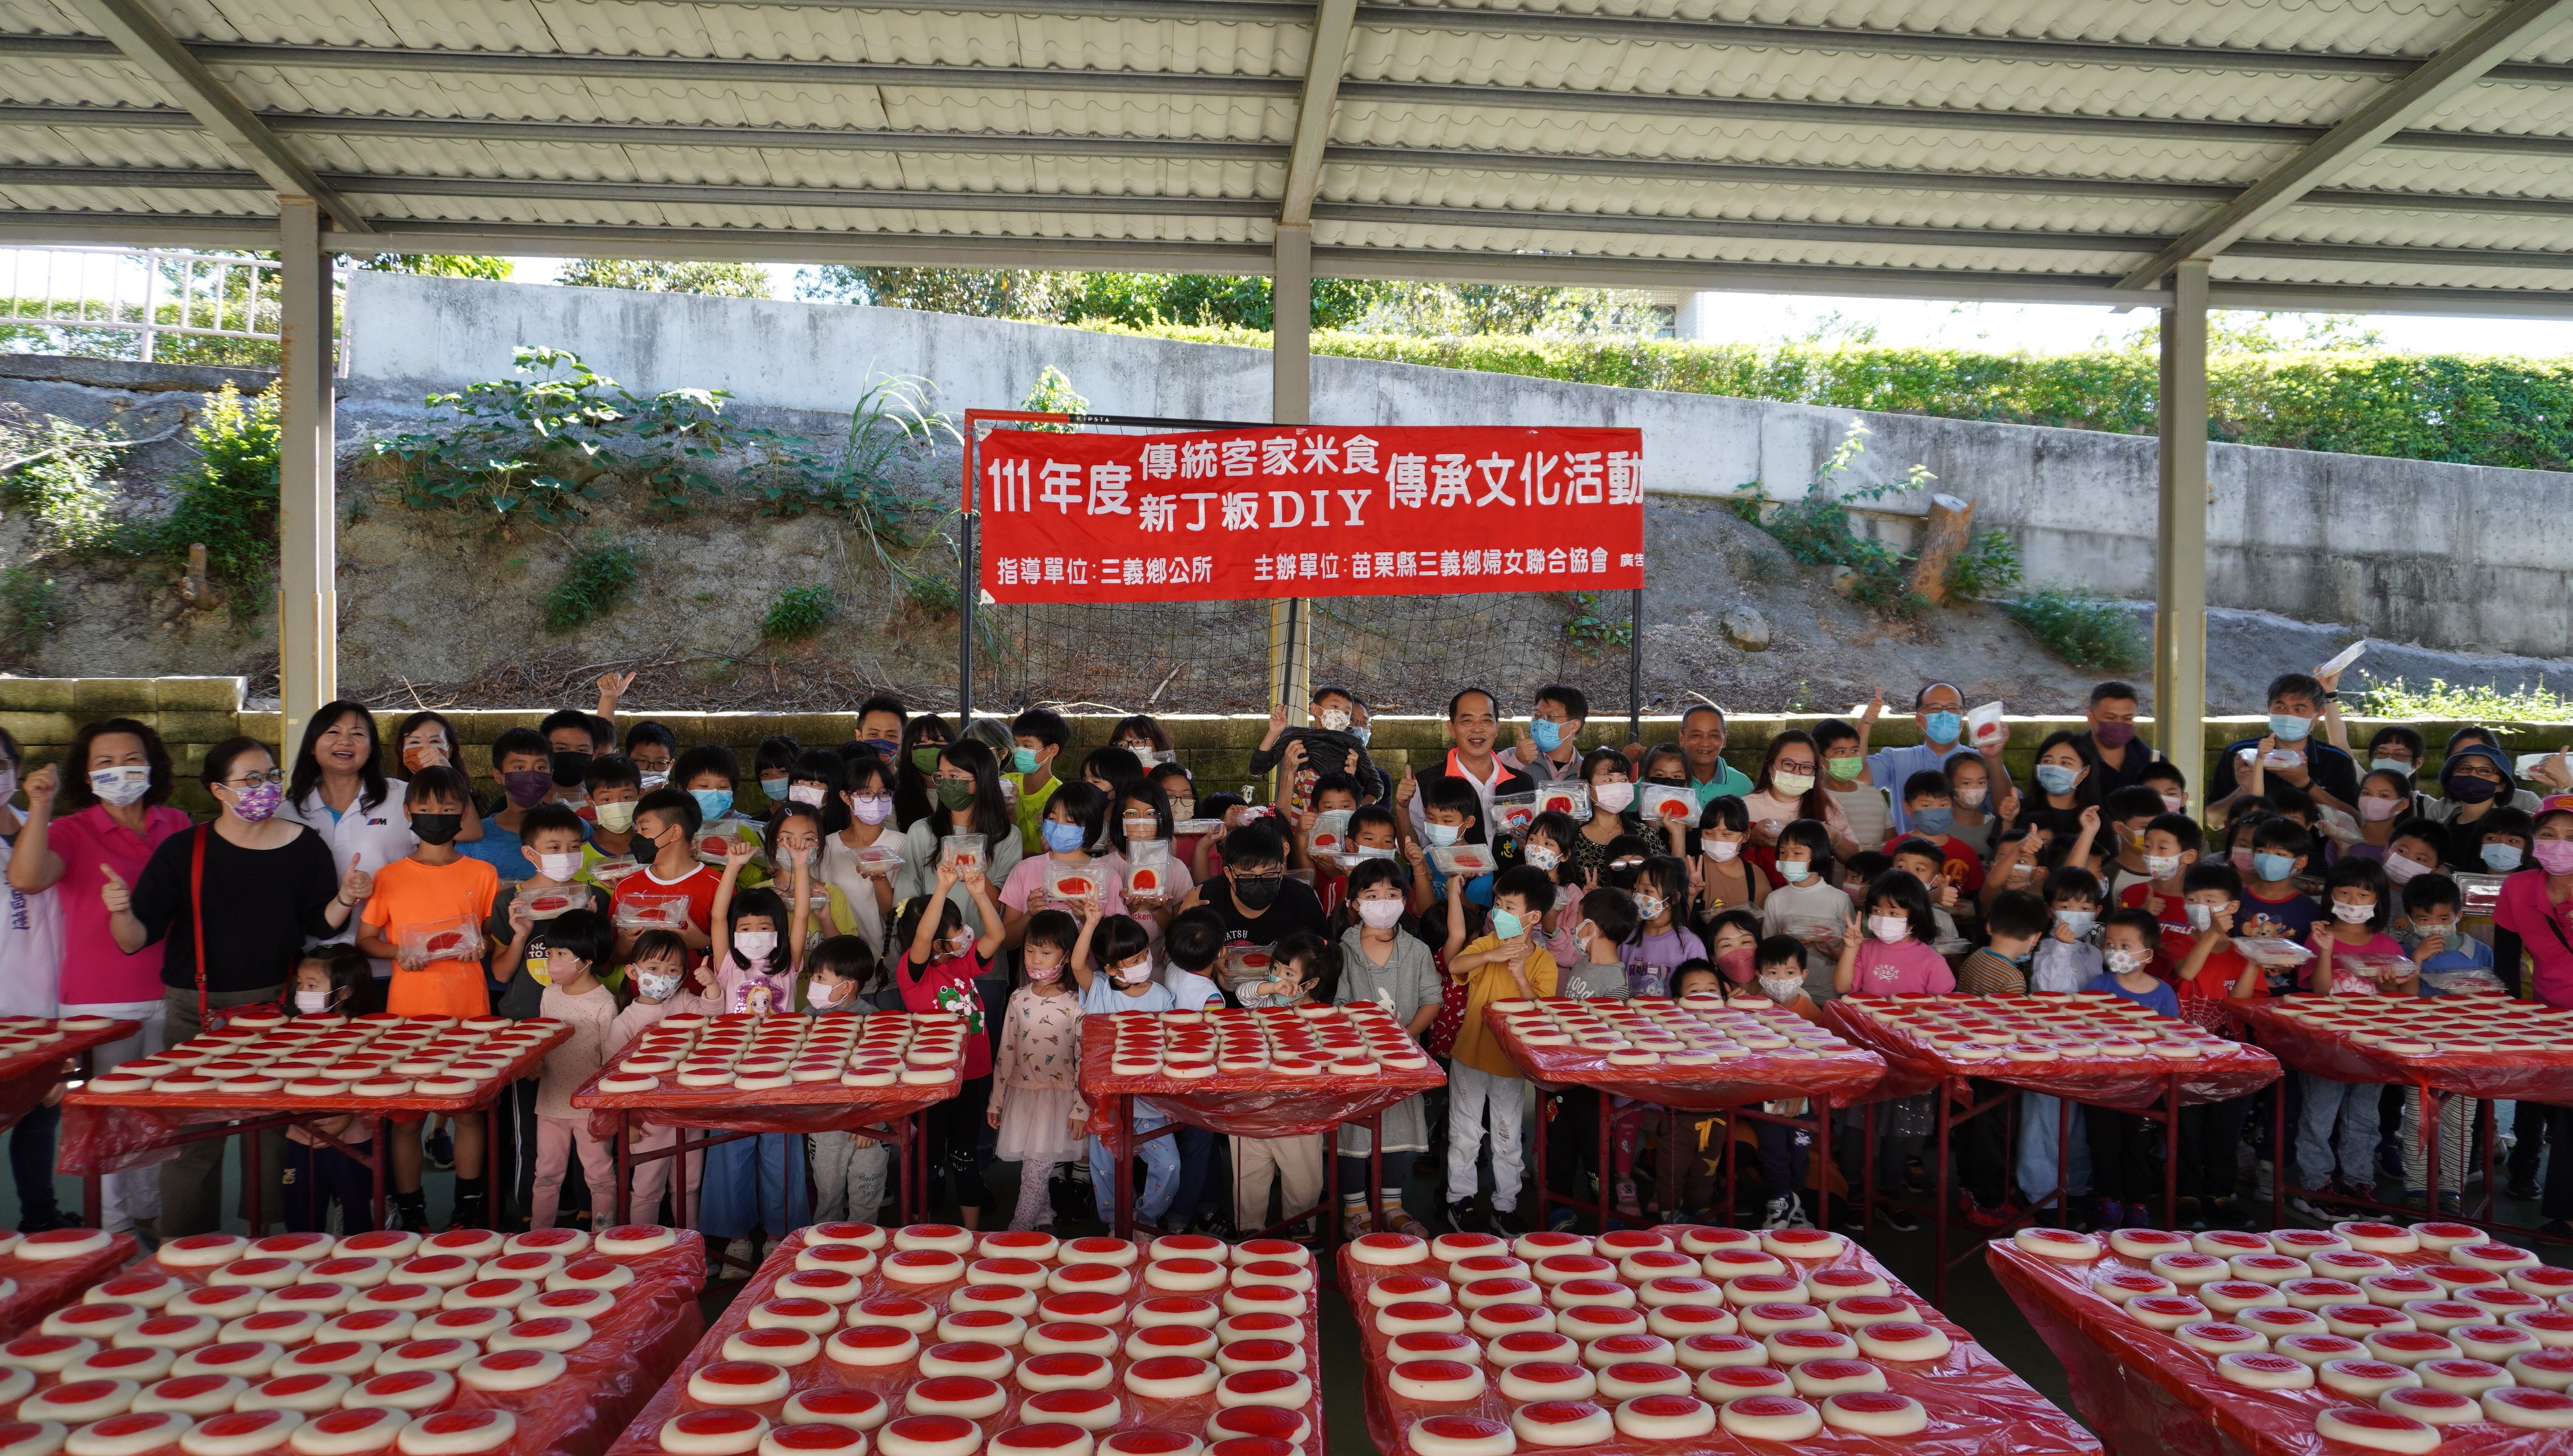 111年度傳統客家米食新丁粄DIY傳承文化活動剪影